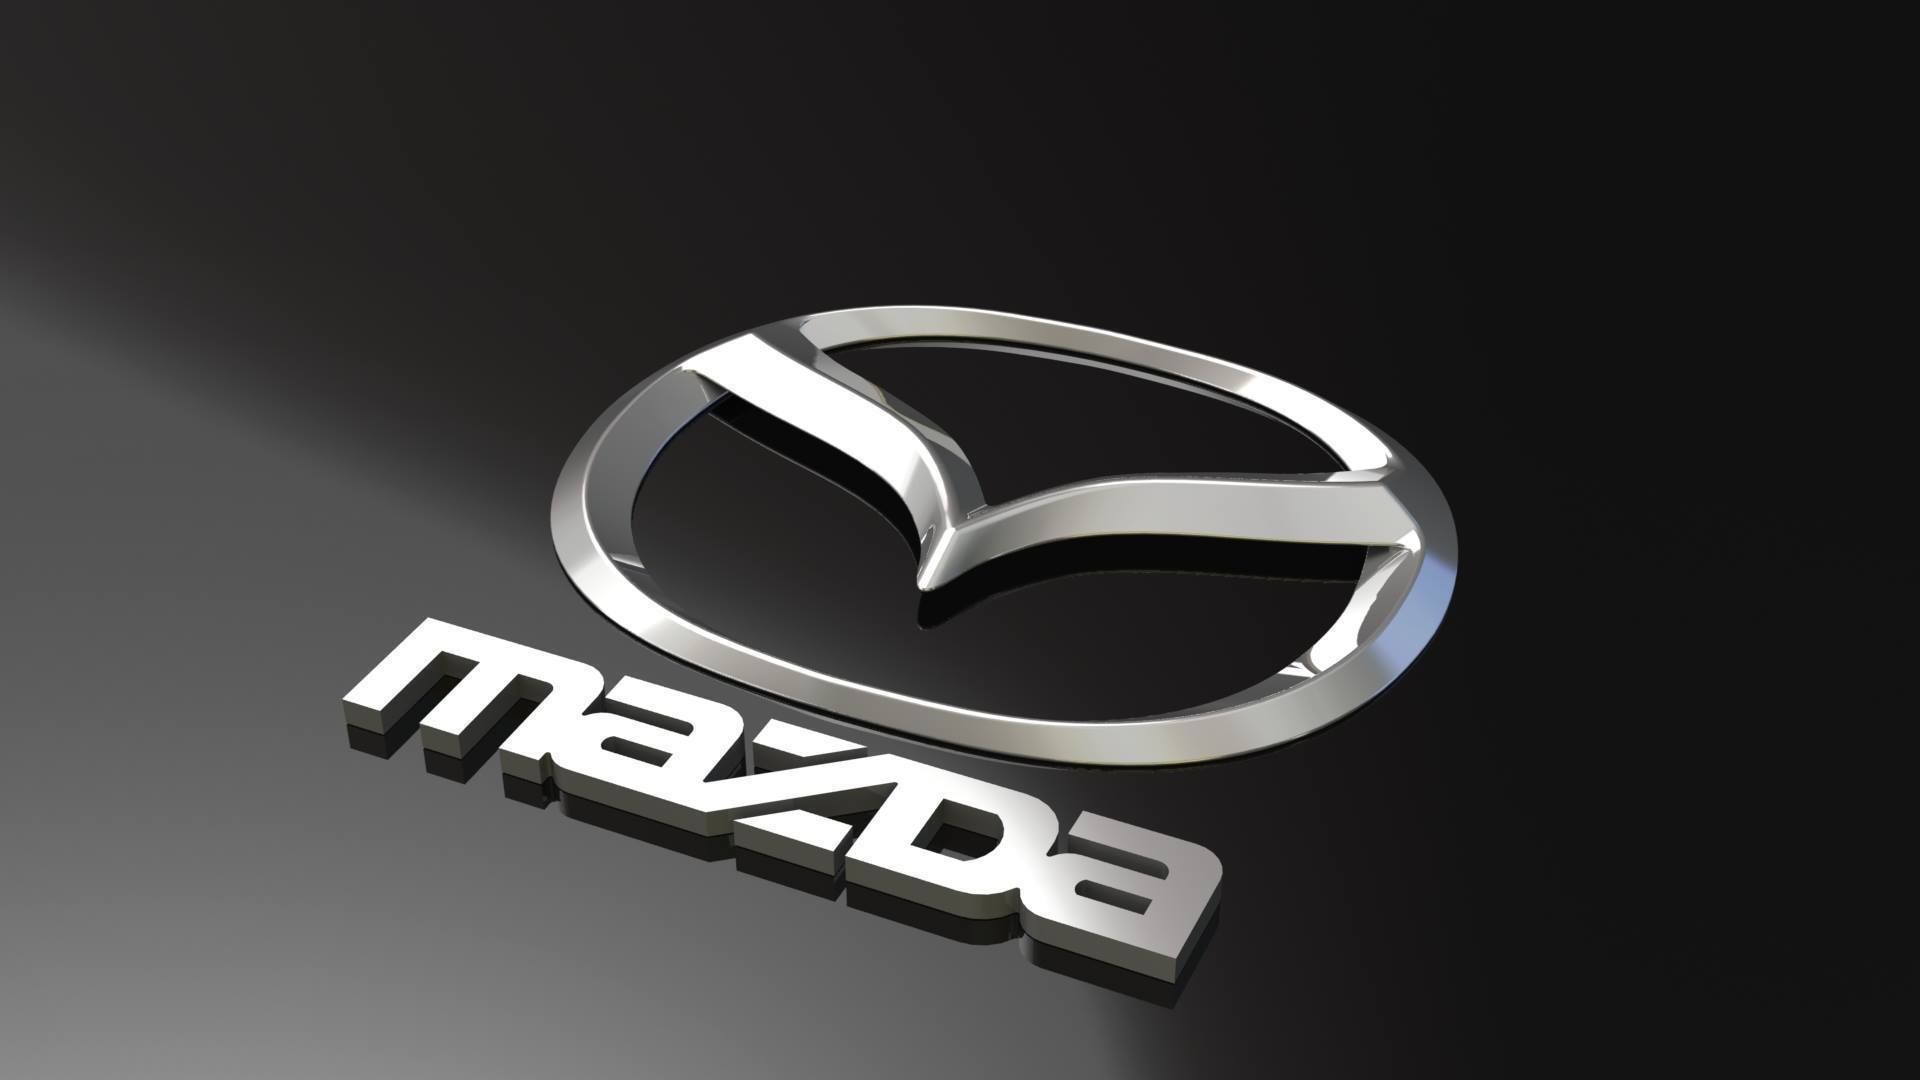                             Logo của các hãng xe trên thế giới - Mazda